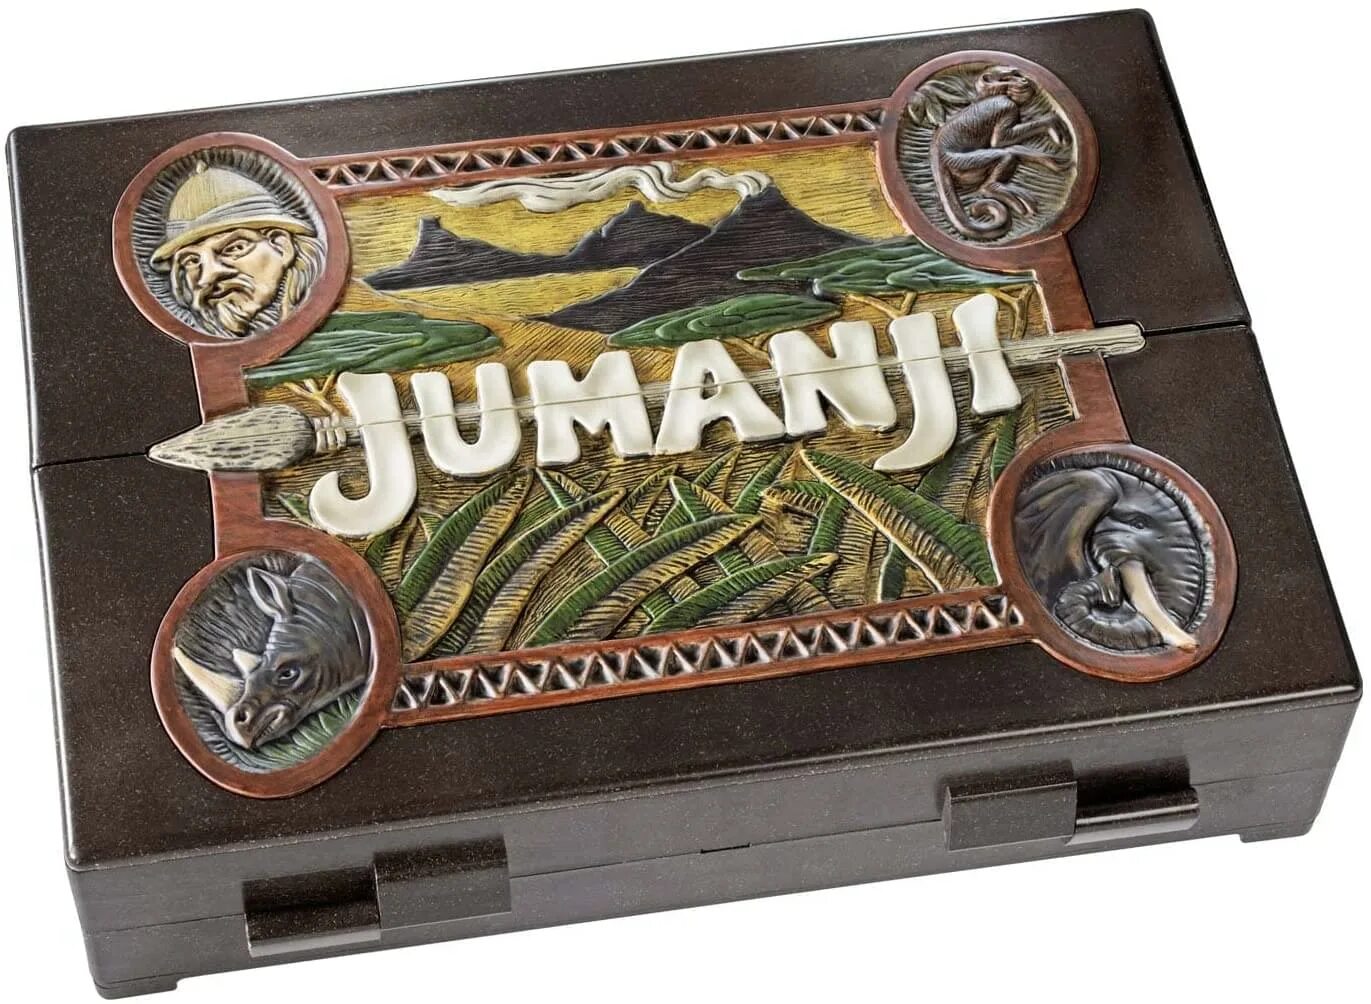 Настольная игра Jumanji. Джуманджи настолка. Джуманджи: игра. Джуманджи настольная игра коробка.